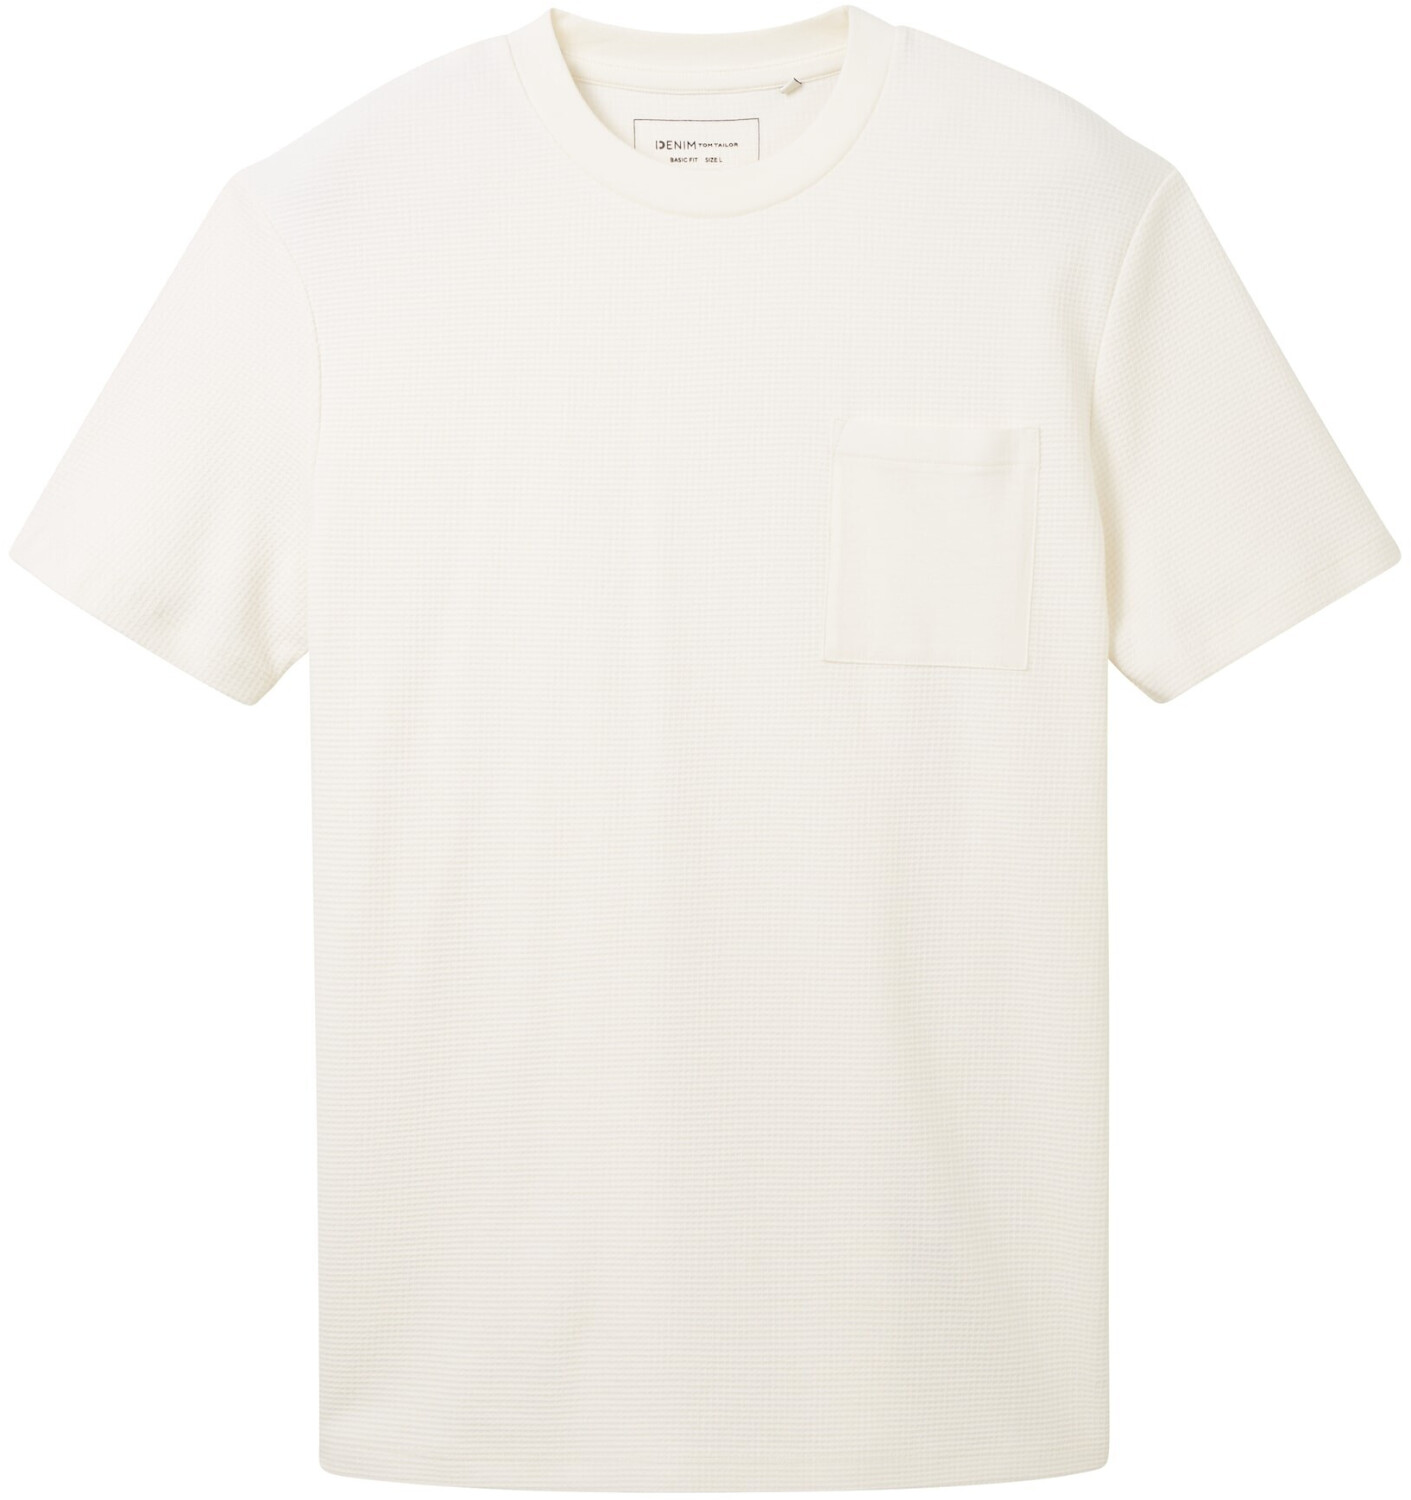 Tom Tailor Denim white | Waffelstruktur bei ab 21,04 € T-Shirt Preisvergleich (1037679-12906) wool mit